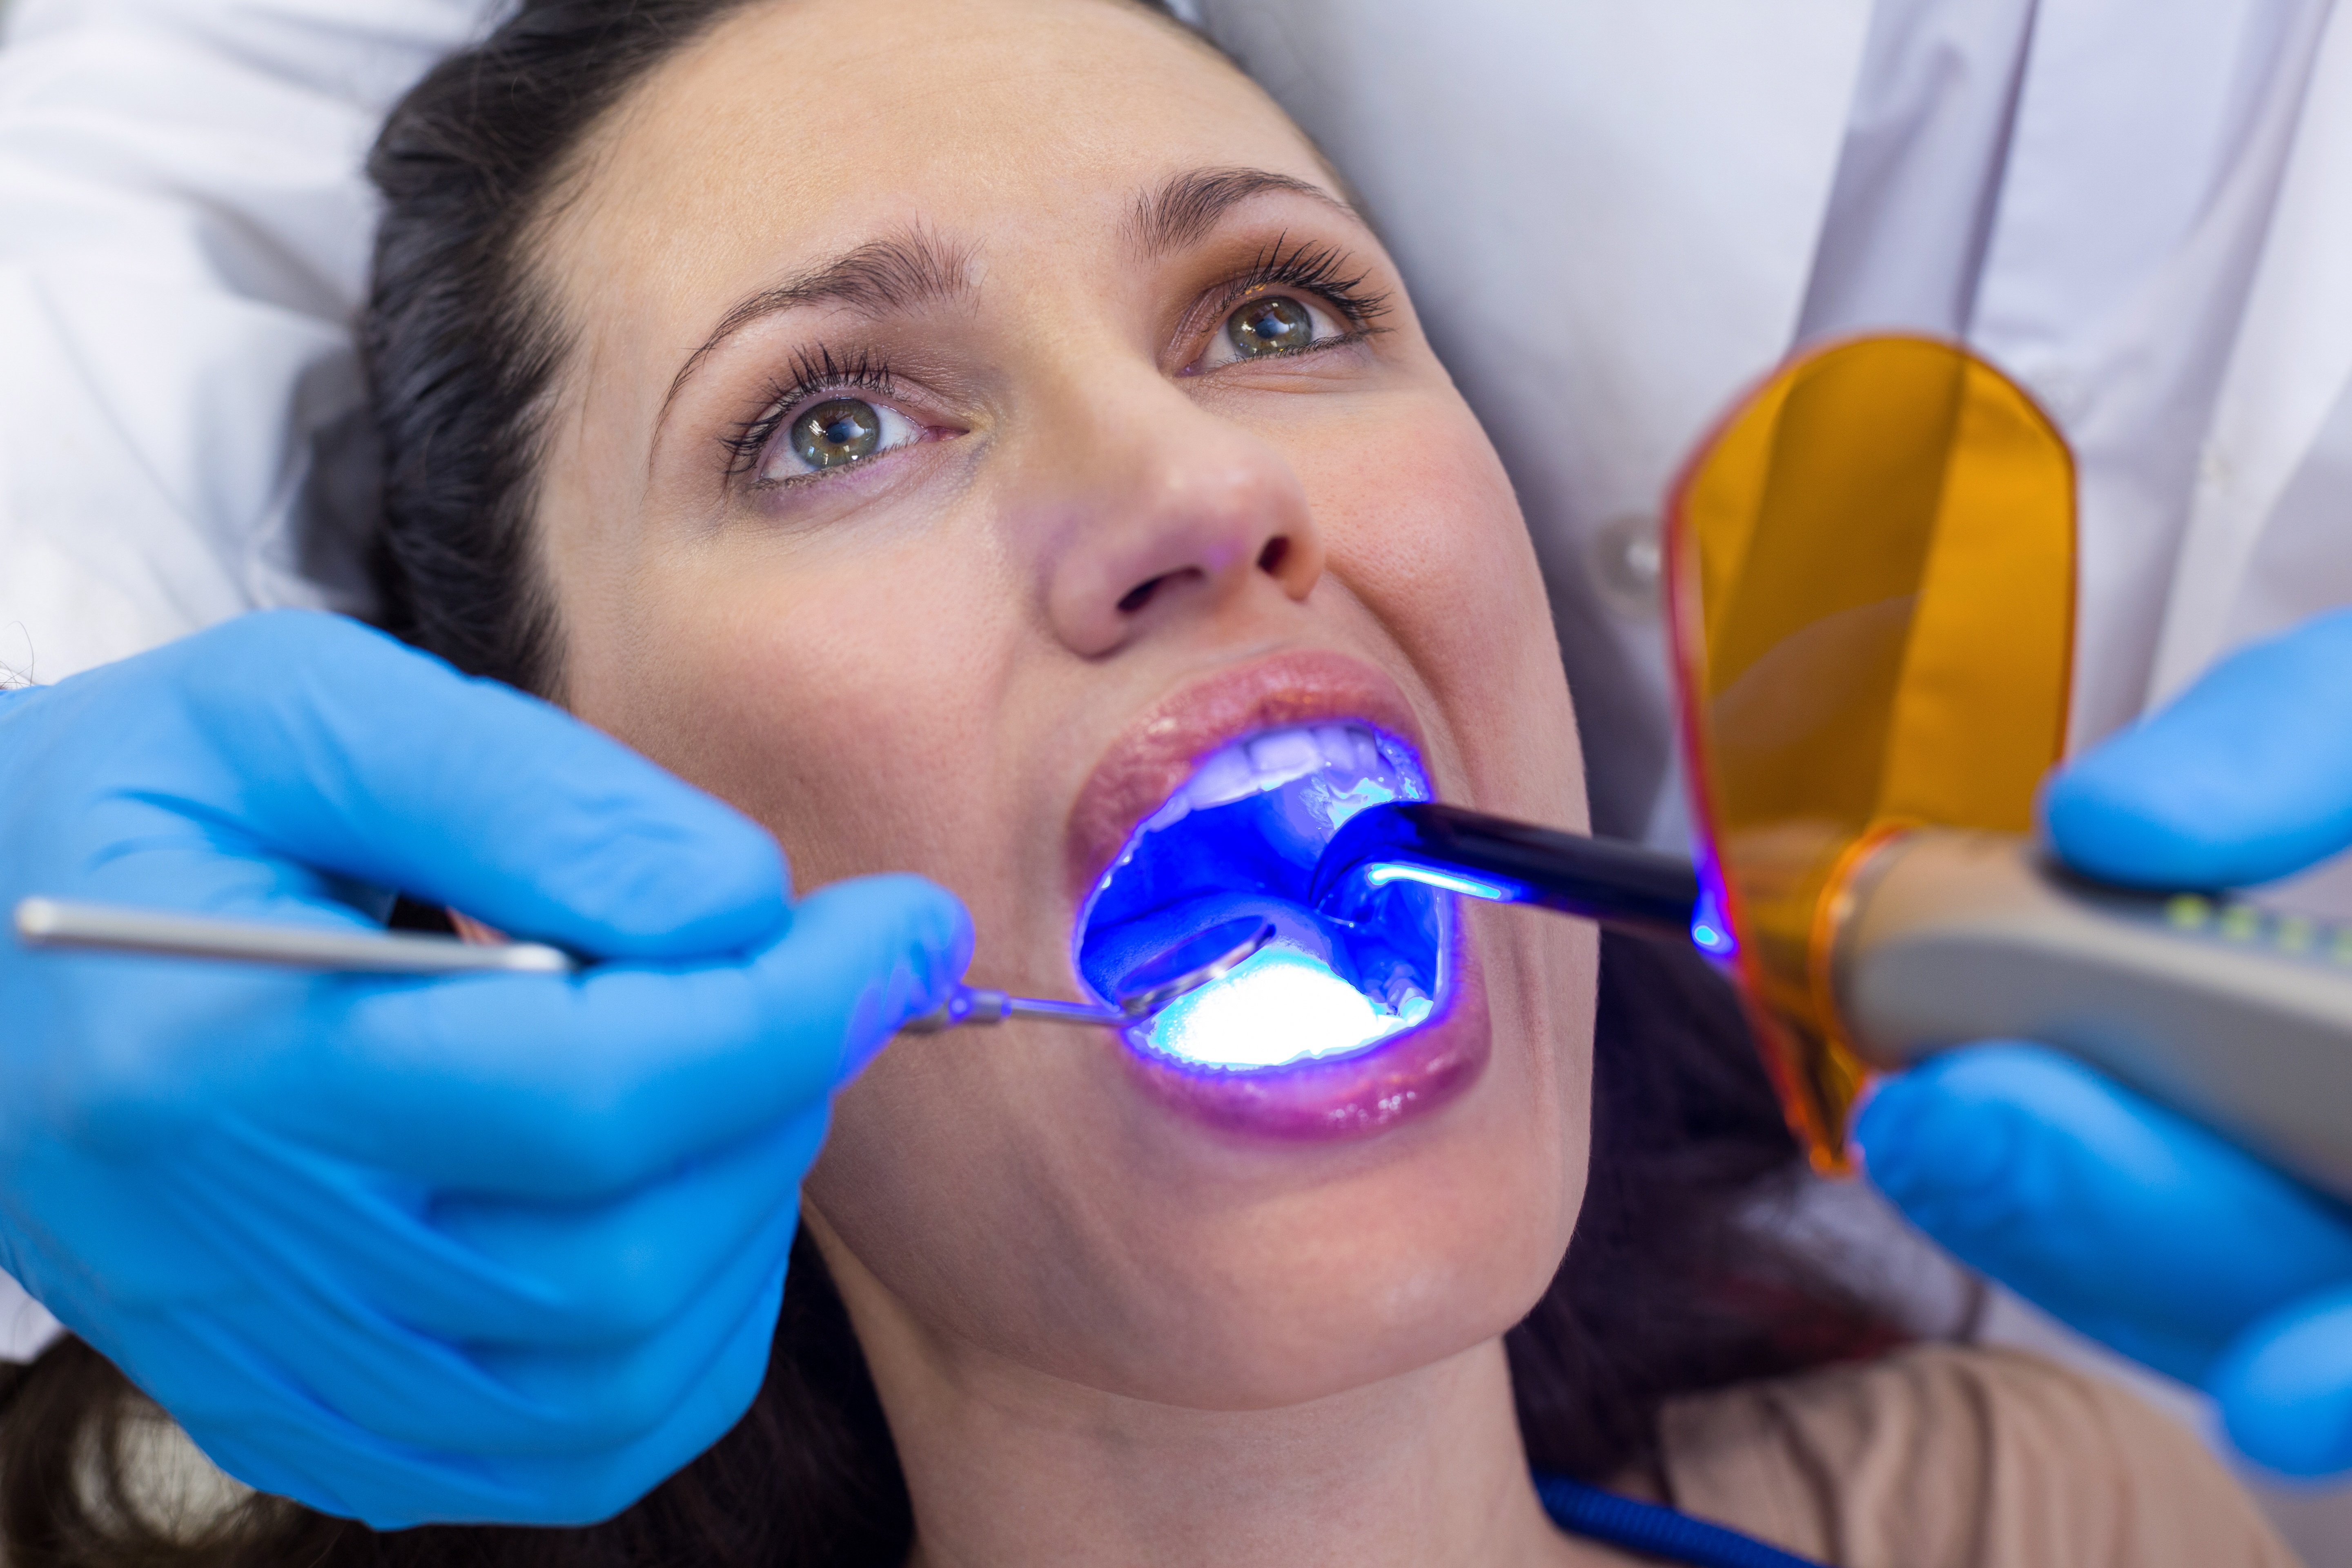 Clareamento dental a laser ou caseiro?